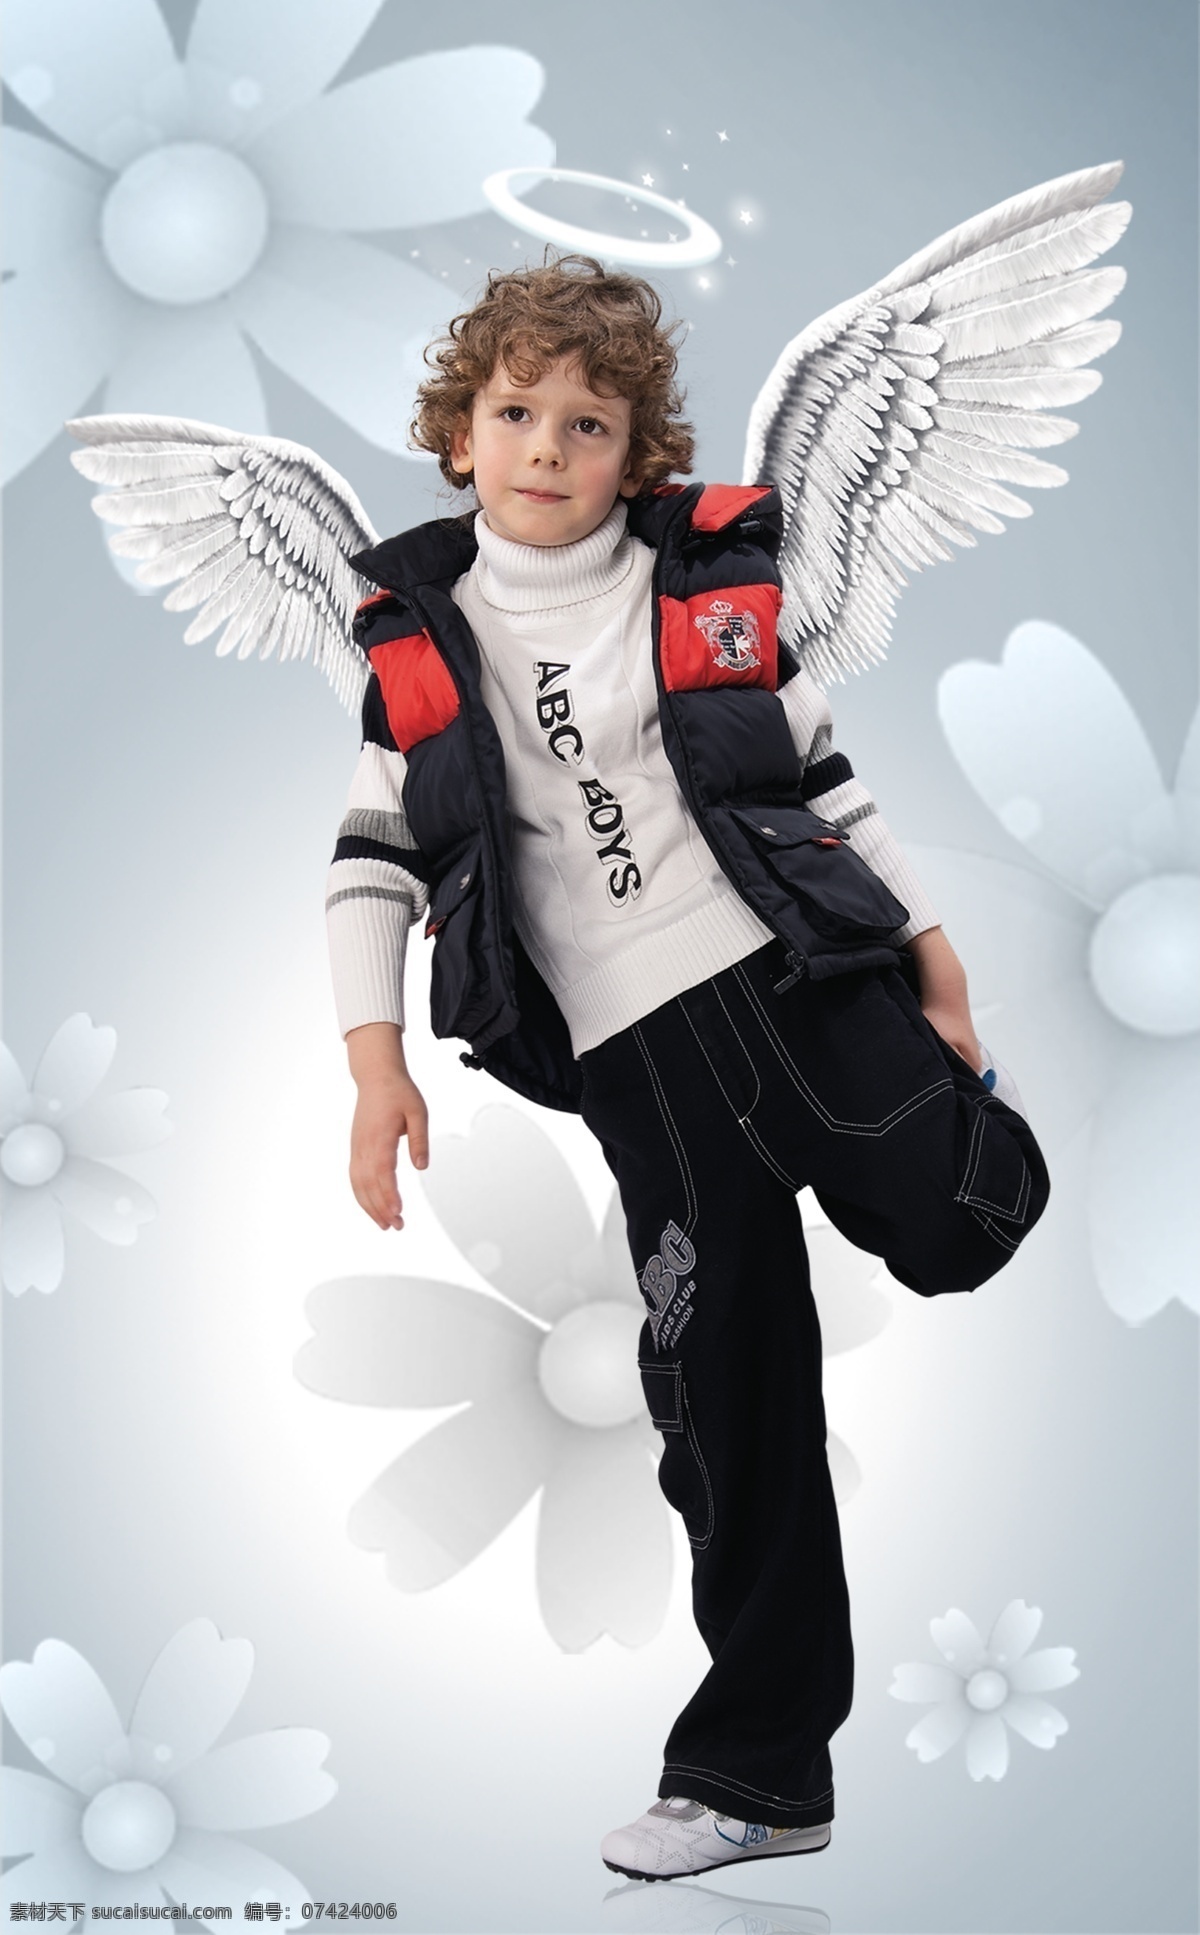 超市服装吊牌 服装海报 儿童 童装 翅膀 花朵 儿童羽绒服 天使光环 展板模板 广告设计模板 源文件